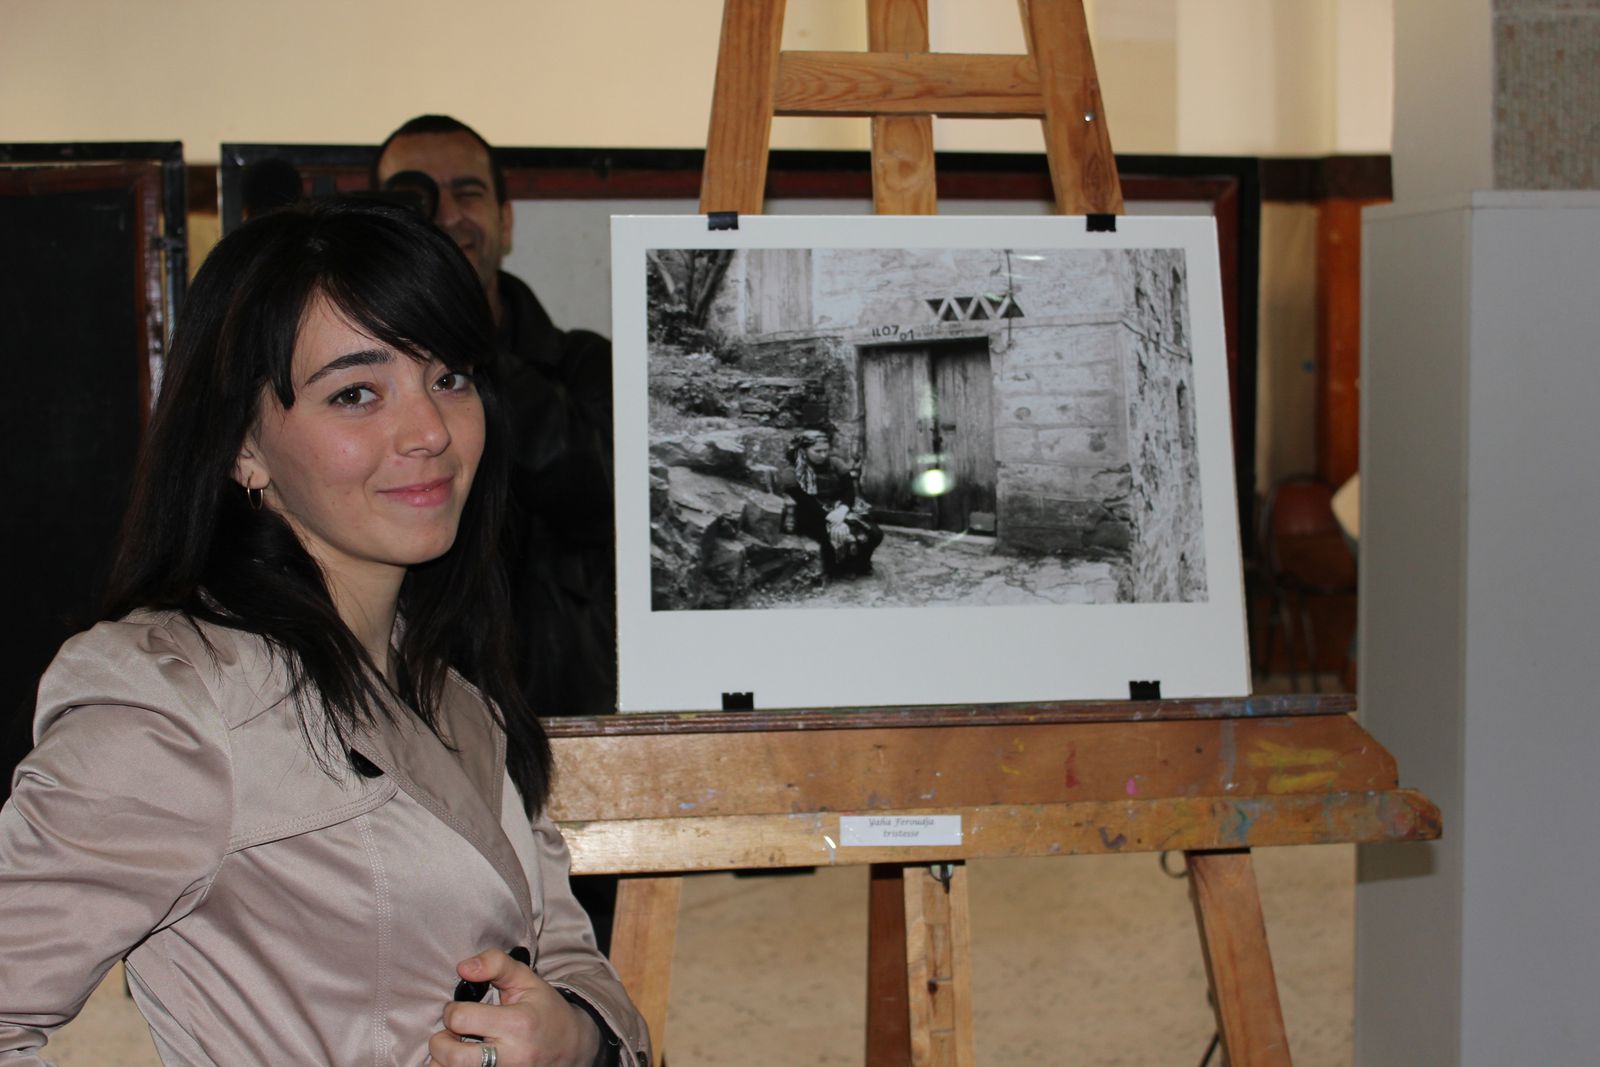 salle d'exposition Zemirli Mohamed à la maison de la culture Mouloud Mammeri de Tizi-Ouzou le 29 février et le 1 er mars 2012, par Studio 21école.